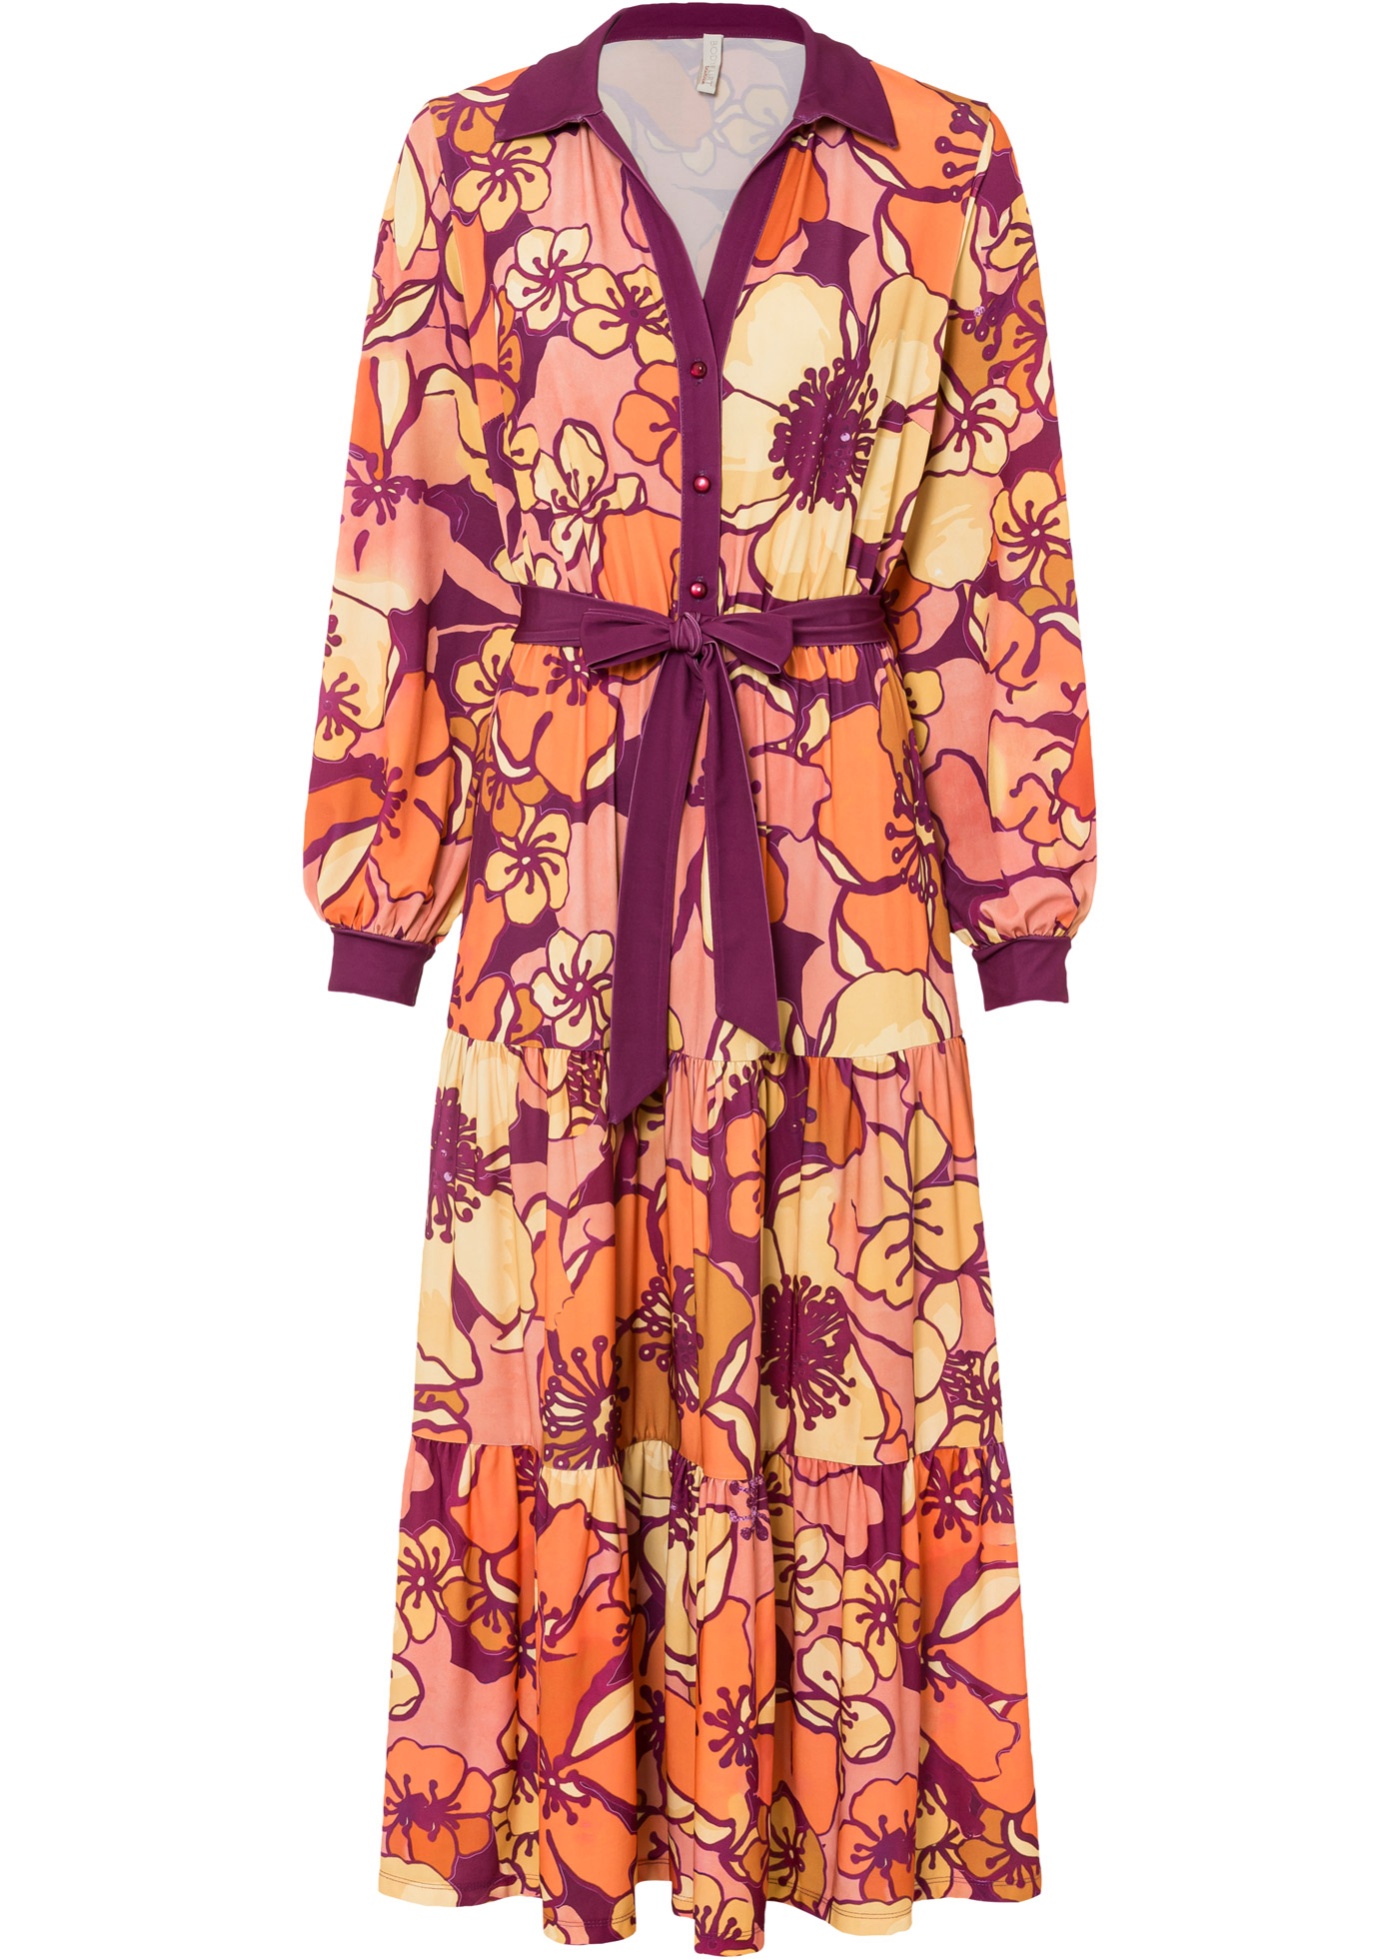 Romantisch und Feminin: Jersey-Kleid mit kontrastem Hemdkragen, Binde-Detail an der Taille und Ärmel-Bund, mit seinem Allover-Druck macht es jedes Teil zu einem Unikat. (96446981) in orange/dunkelrot floral